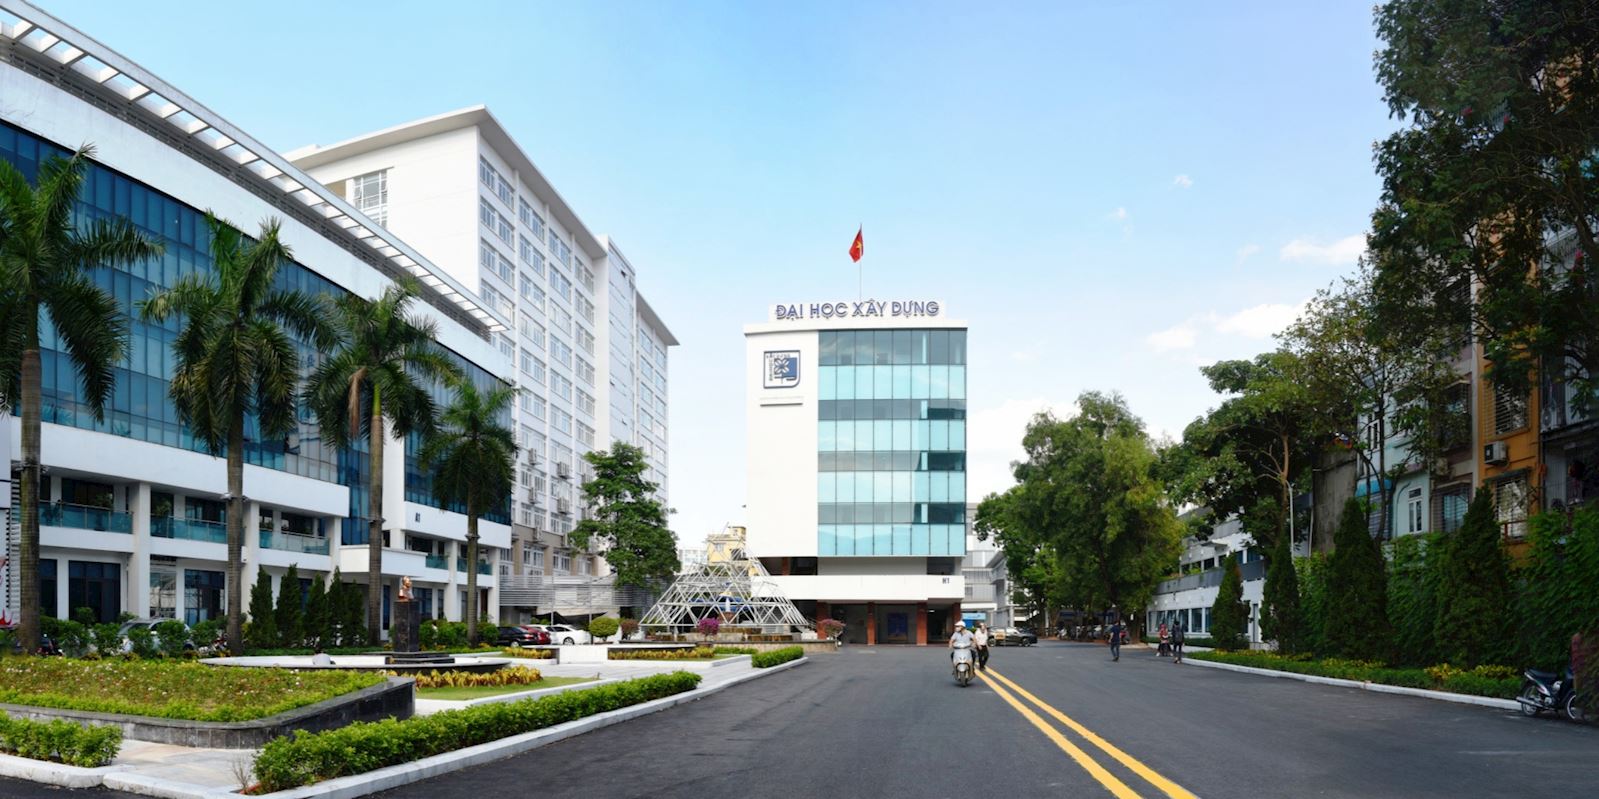 Trường Đại học Xây dựng đổi tên thành Trường Đại học Xây dựng Hà Nội